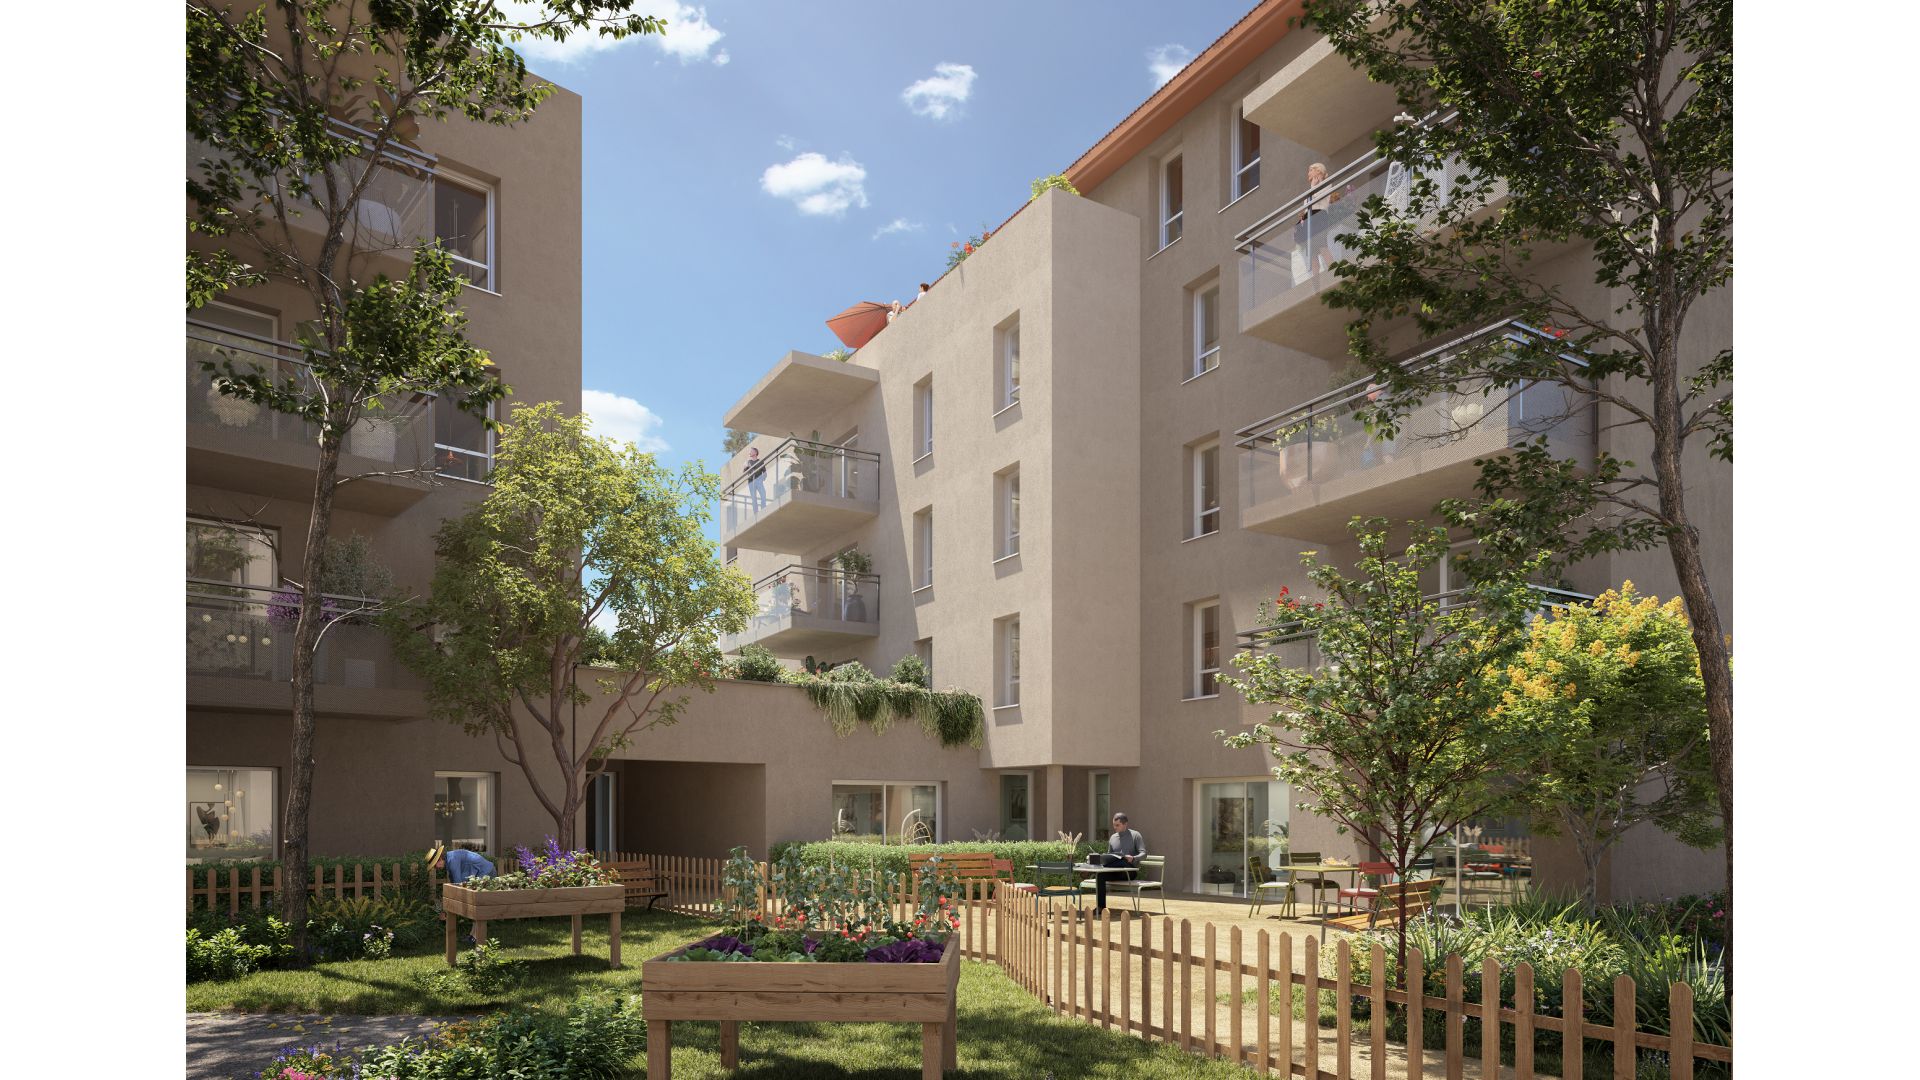 Greencity immobilier - achat appartements neufs du T2 au T3 - Résidence sénior Les Temporelles - Bonneville - 74130